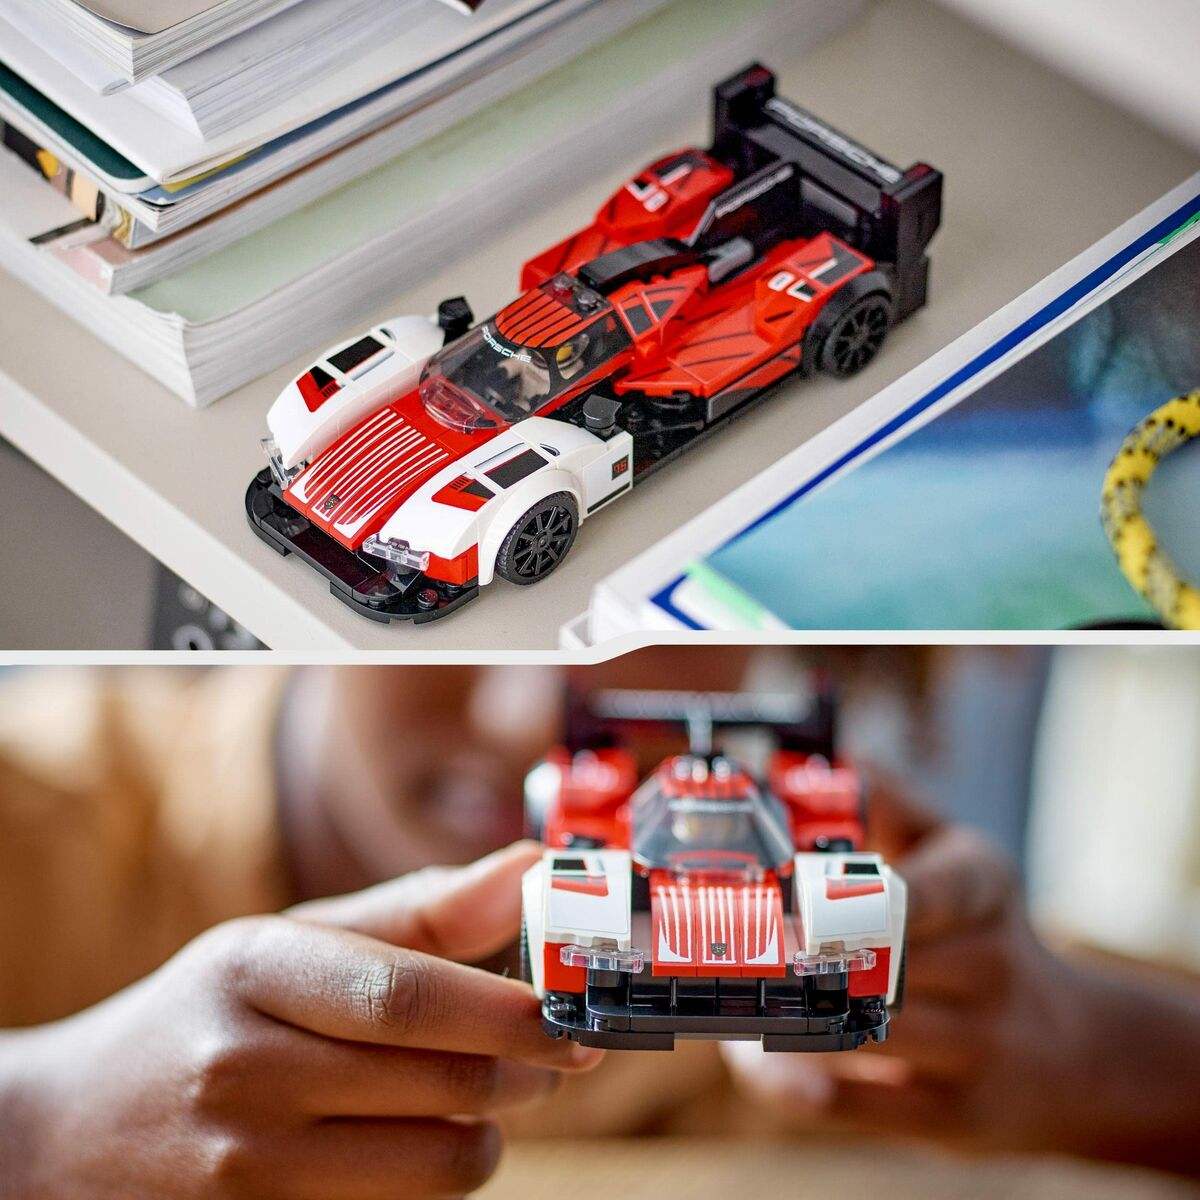 Petite voiture-jouet Lego Speed Champions Porsche 963 - Lego - Jardin D'Eyden - jardindeyden.fr